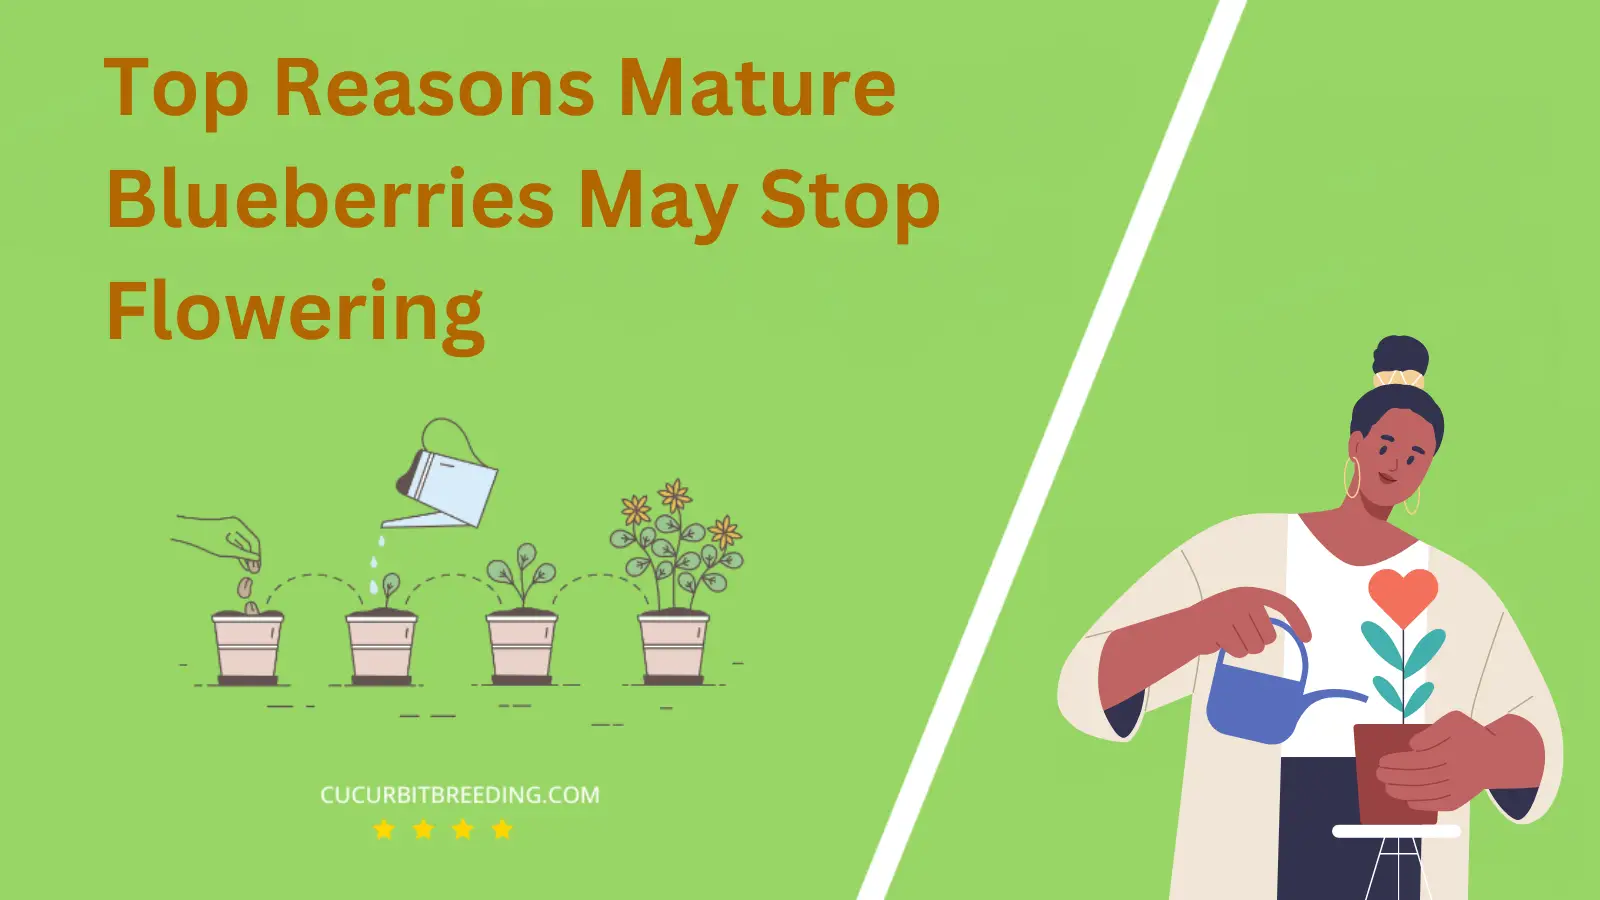 Top Reasons Mature Blueberries May Stop Flowering